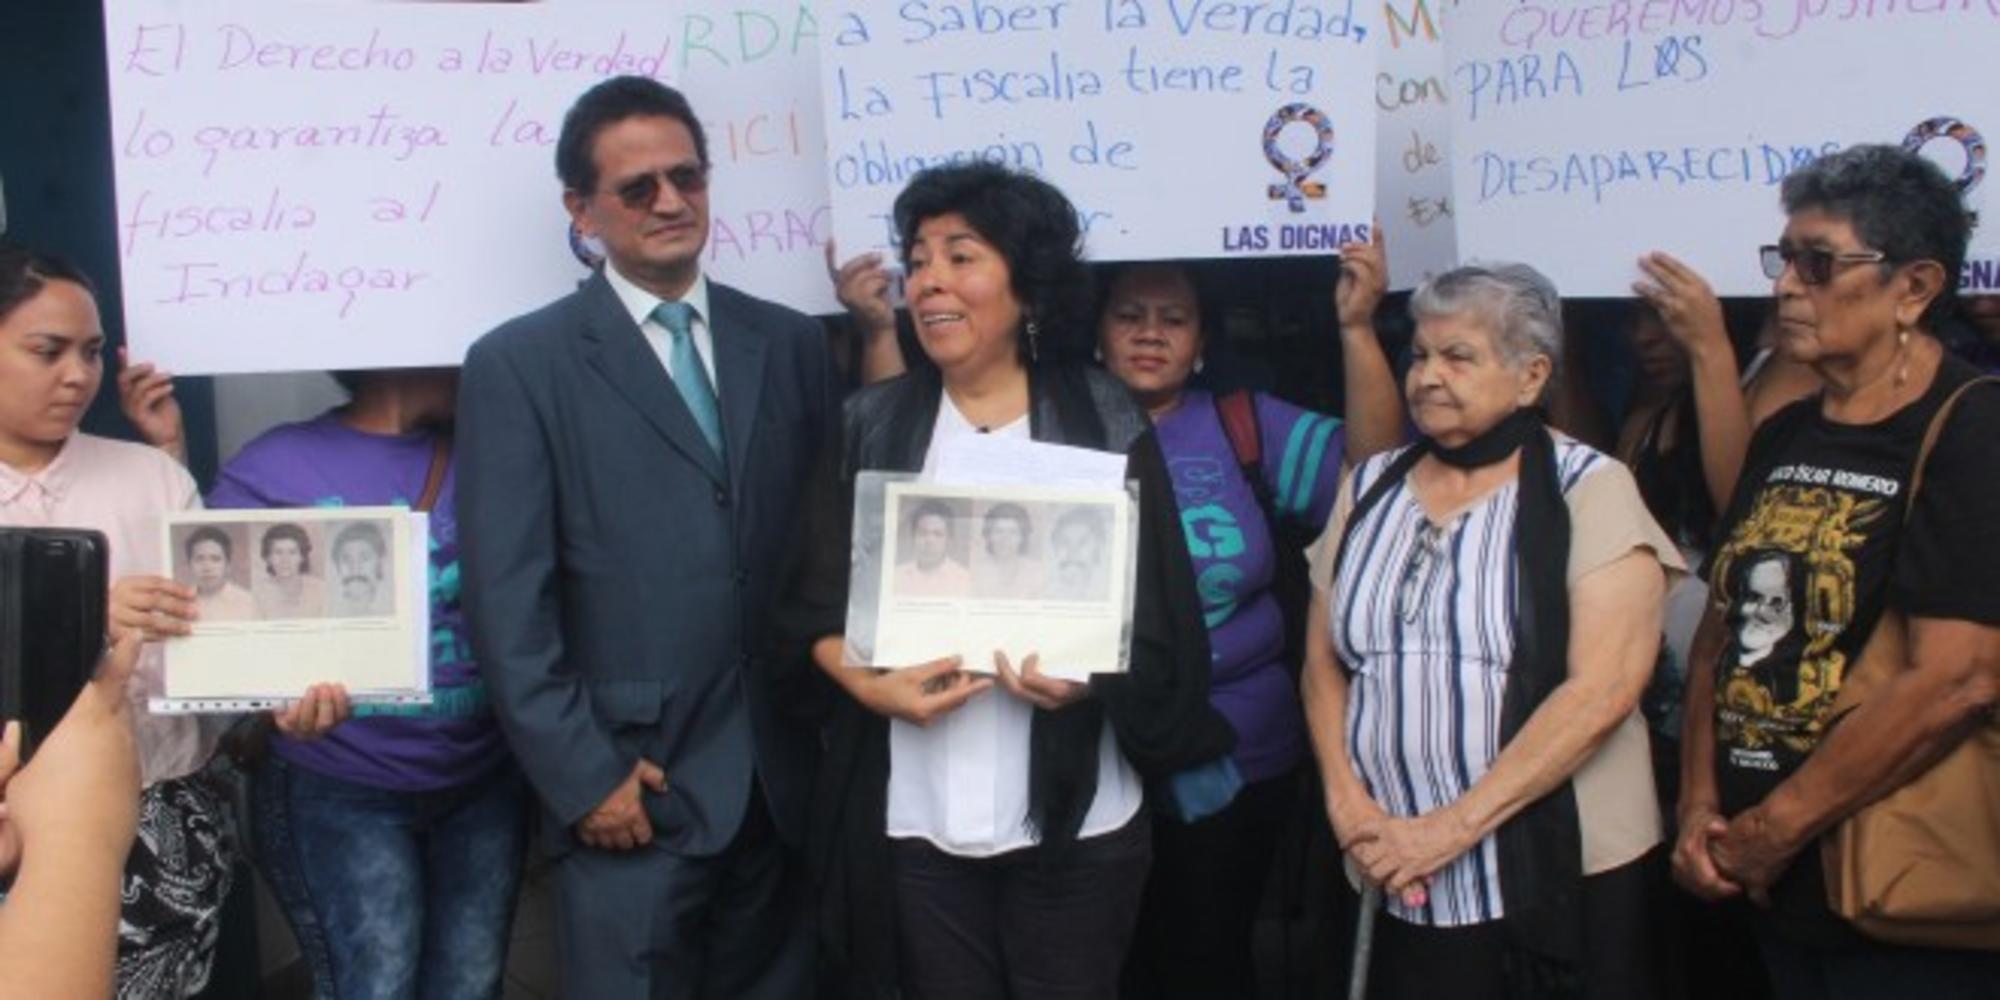 Gloria Guzmán denuncia ante la Fiscalía la desaparición forzada de su familia durante el conflicto armado en El Salvador.